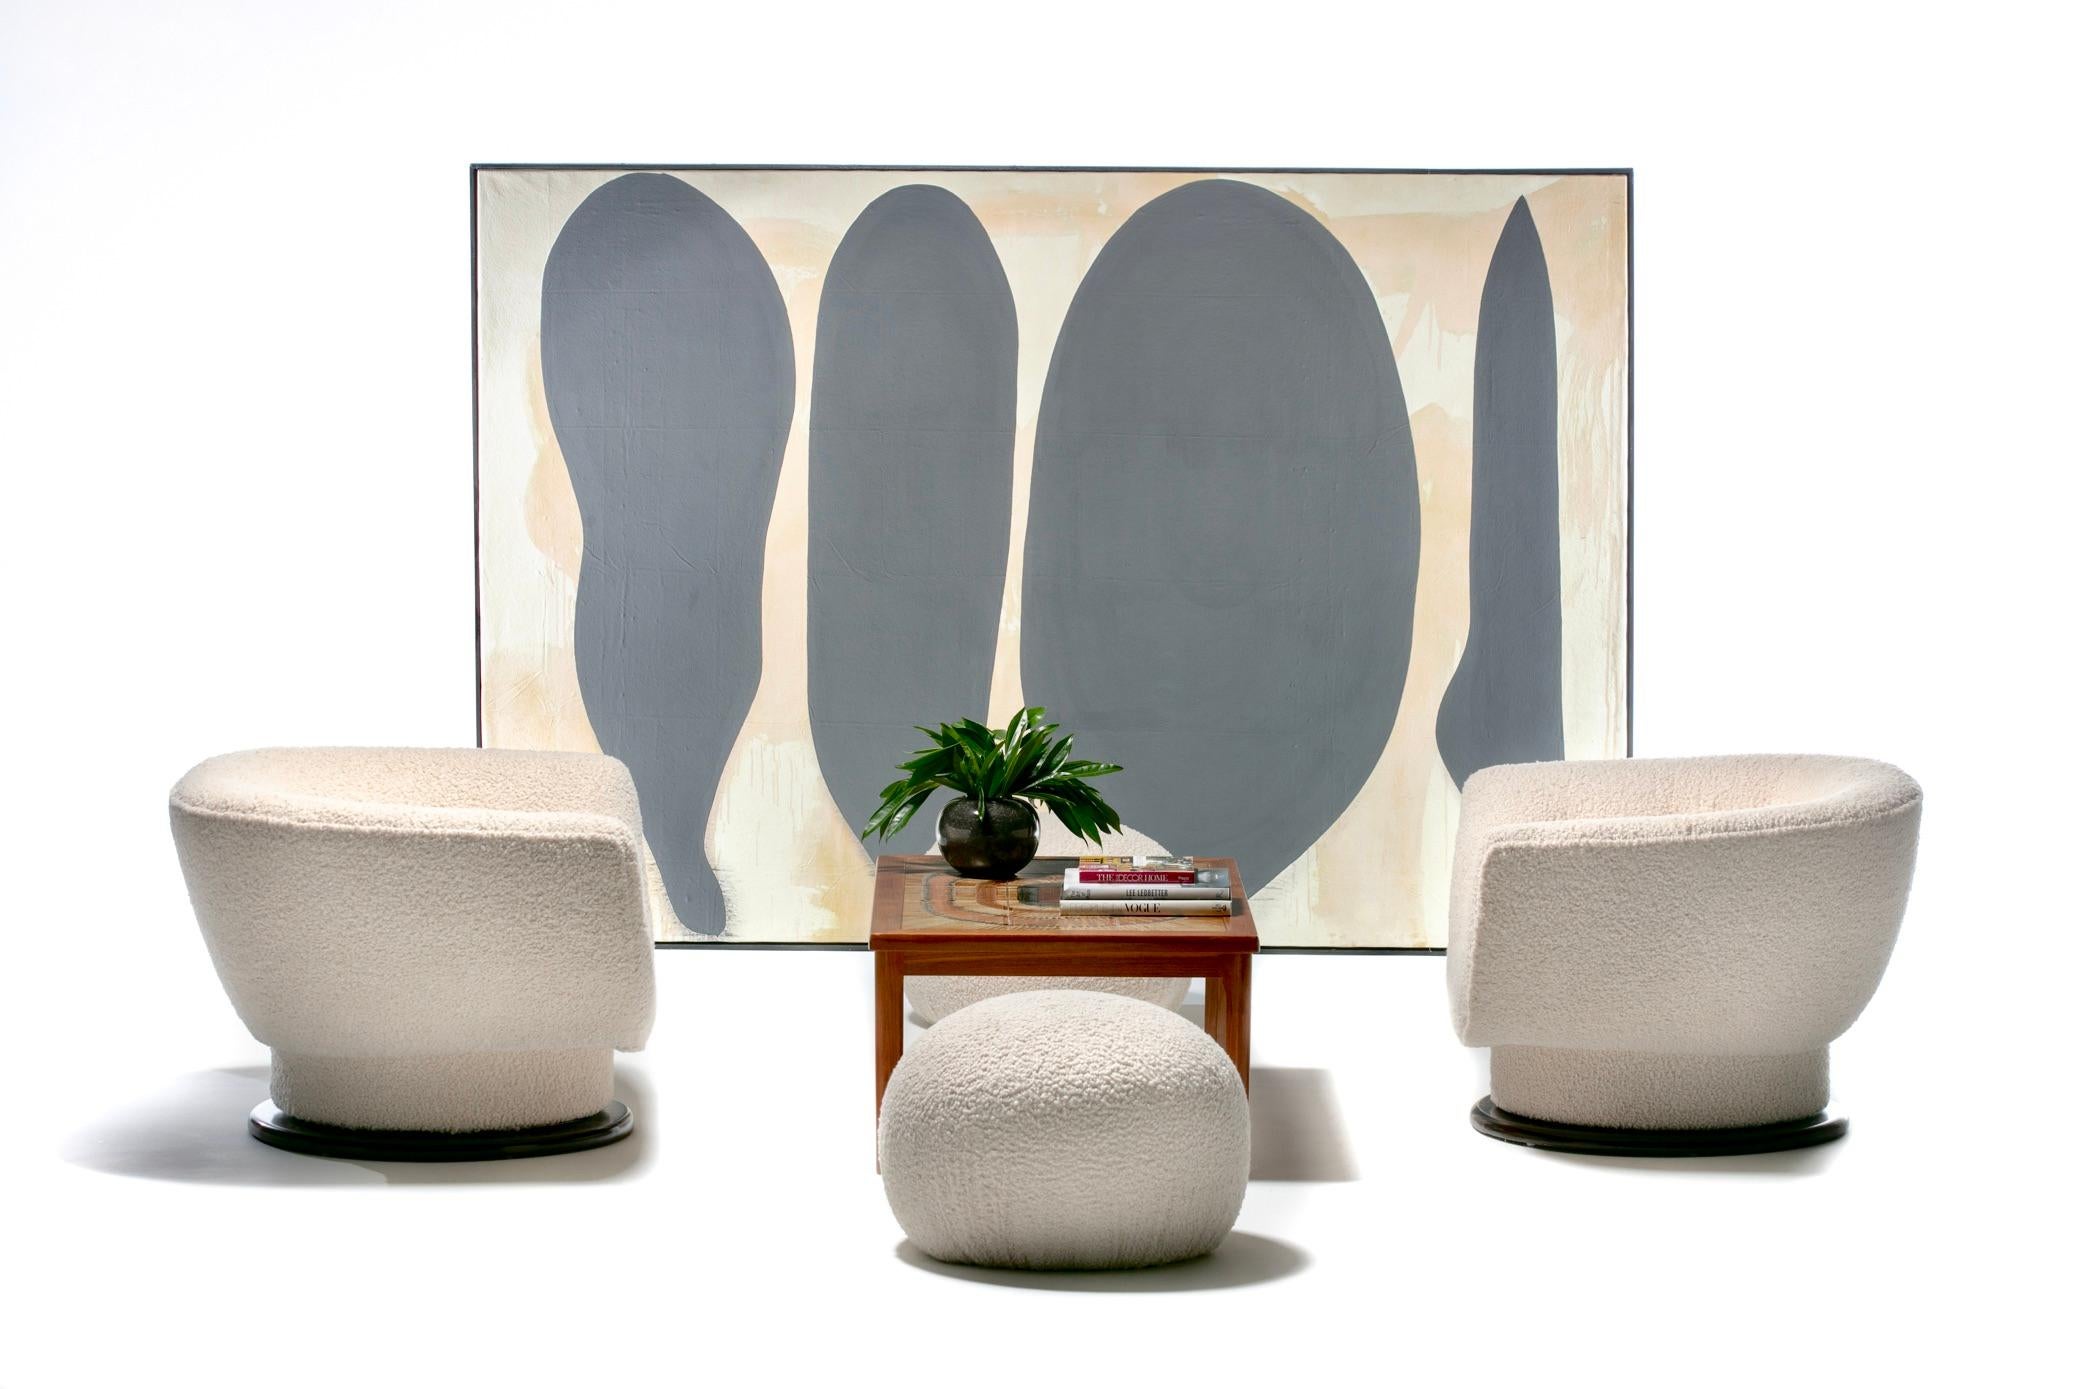 Dieses Paar moderner Adrian Pearsall Thron-Drehstühle aus den 1970er Jahren ist so skulptural und frisch, dass es fachgerecht mit weichem elfenbeinfarbenem Bouclé neu gepolstert wurde und sich auf Walnussholzfüßen dreht, die fachgerecht mit einer